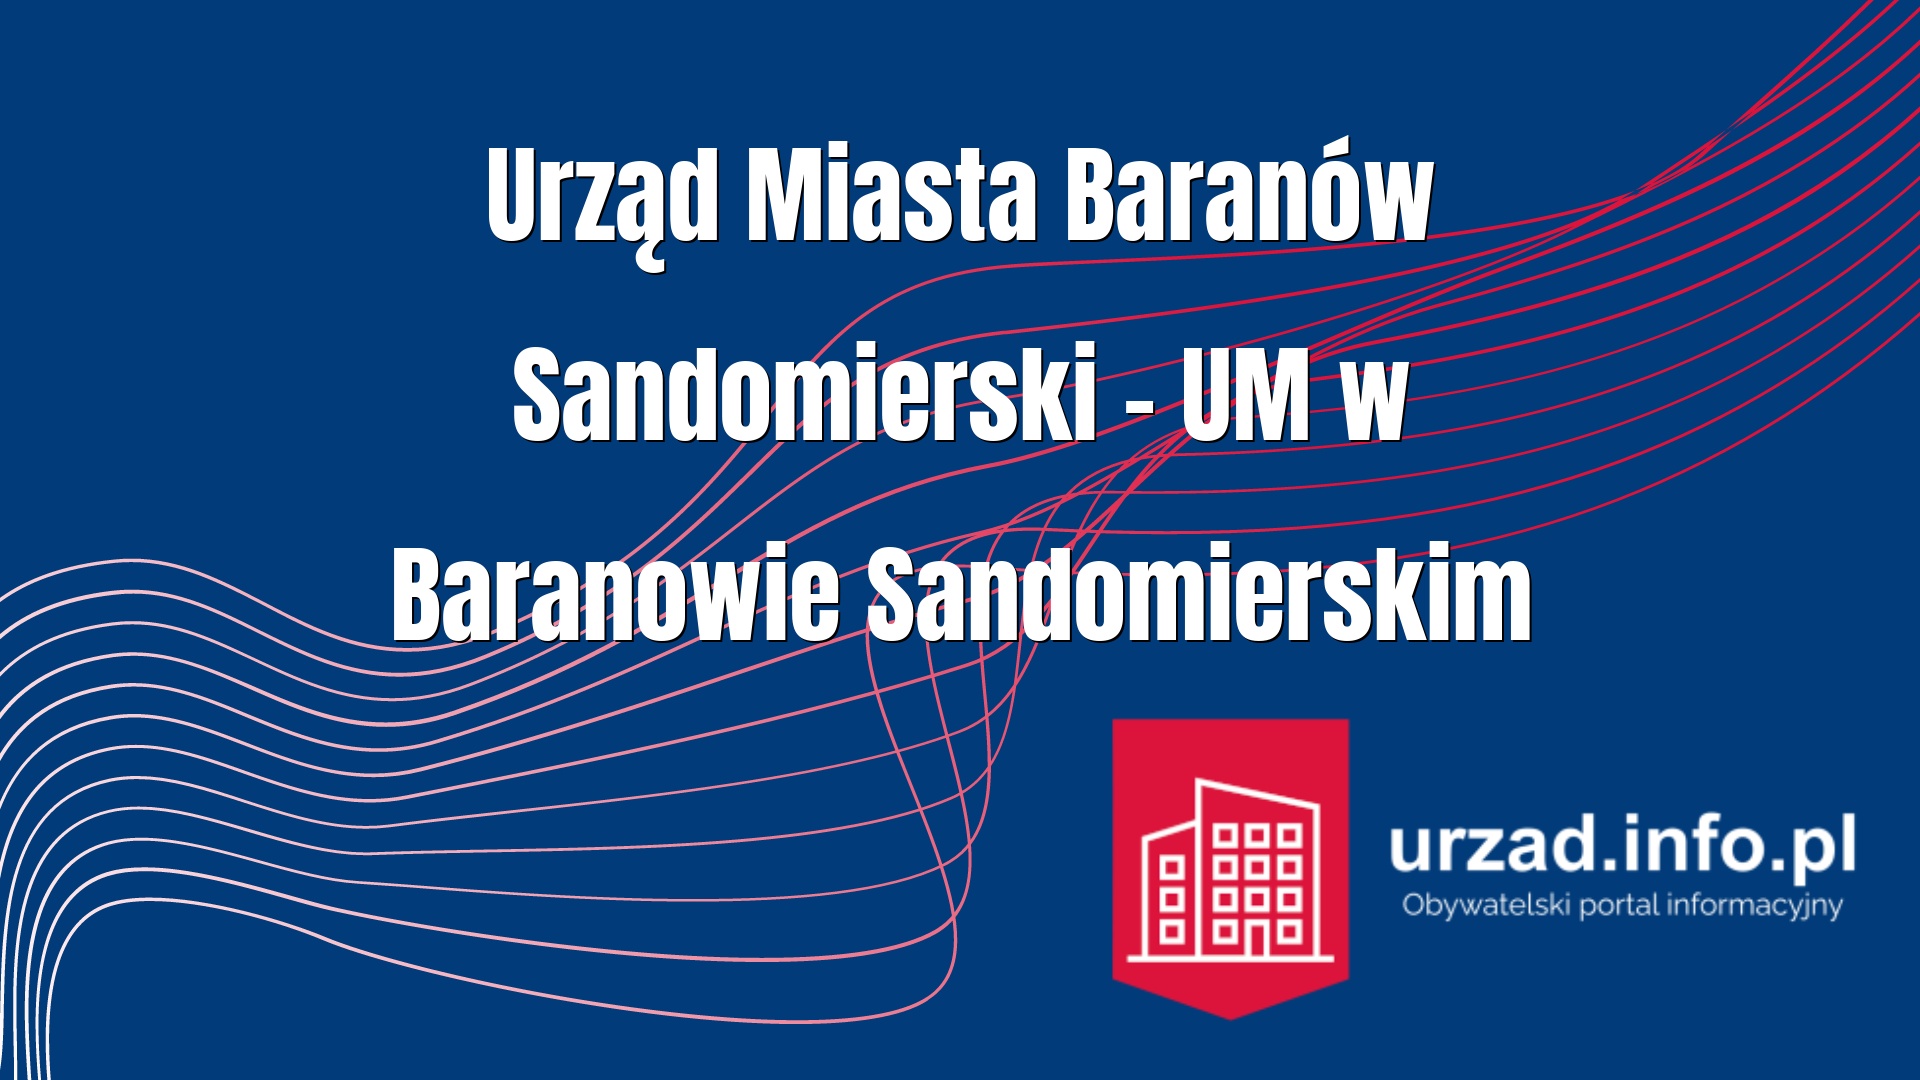 Urząd Miasta Baranów Sandomierski – UM w Baranowie Sandomierskim